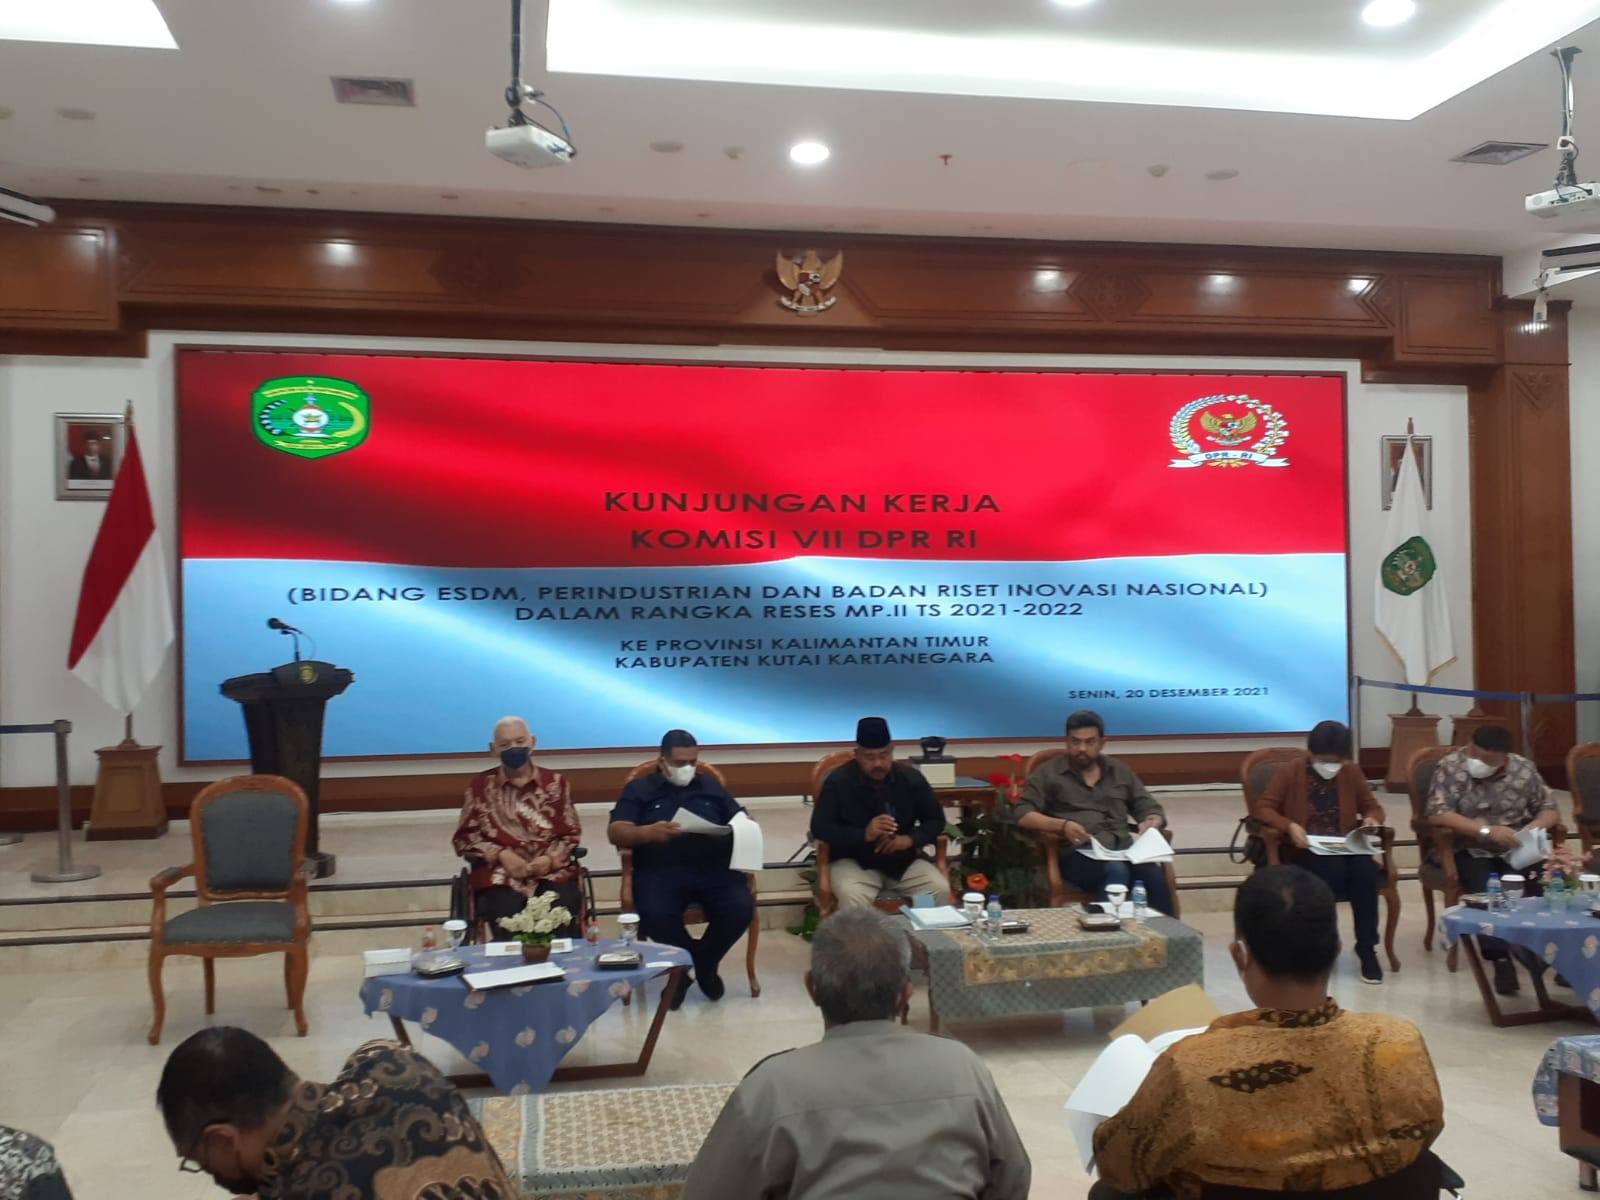 Komisi VII DPR RI Kunker di Kukar, Selesaikan Isu Illegal Mining